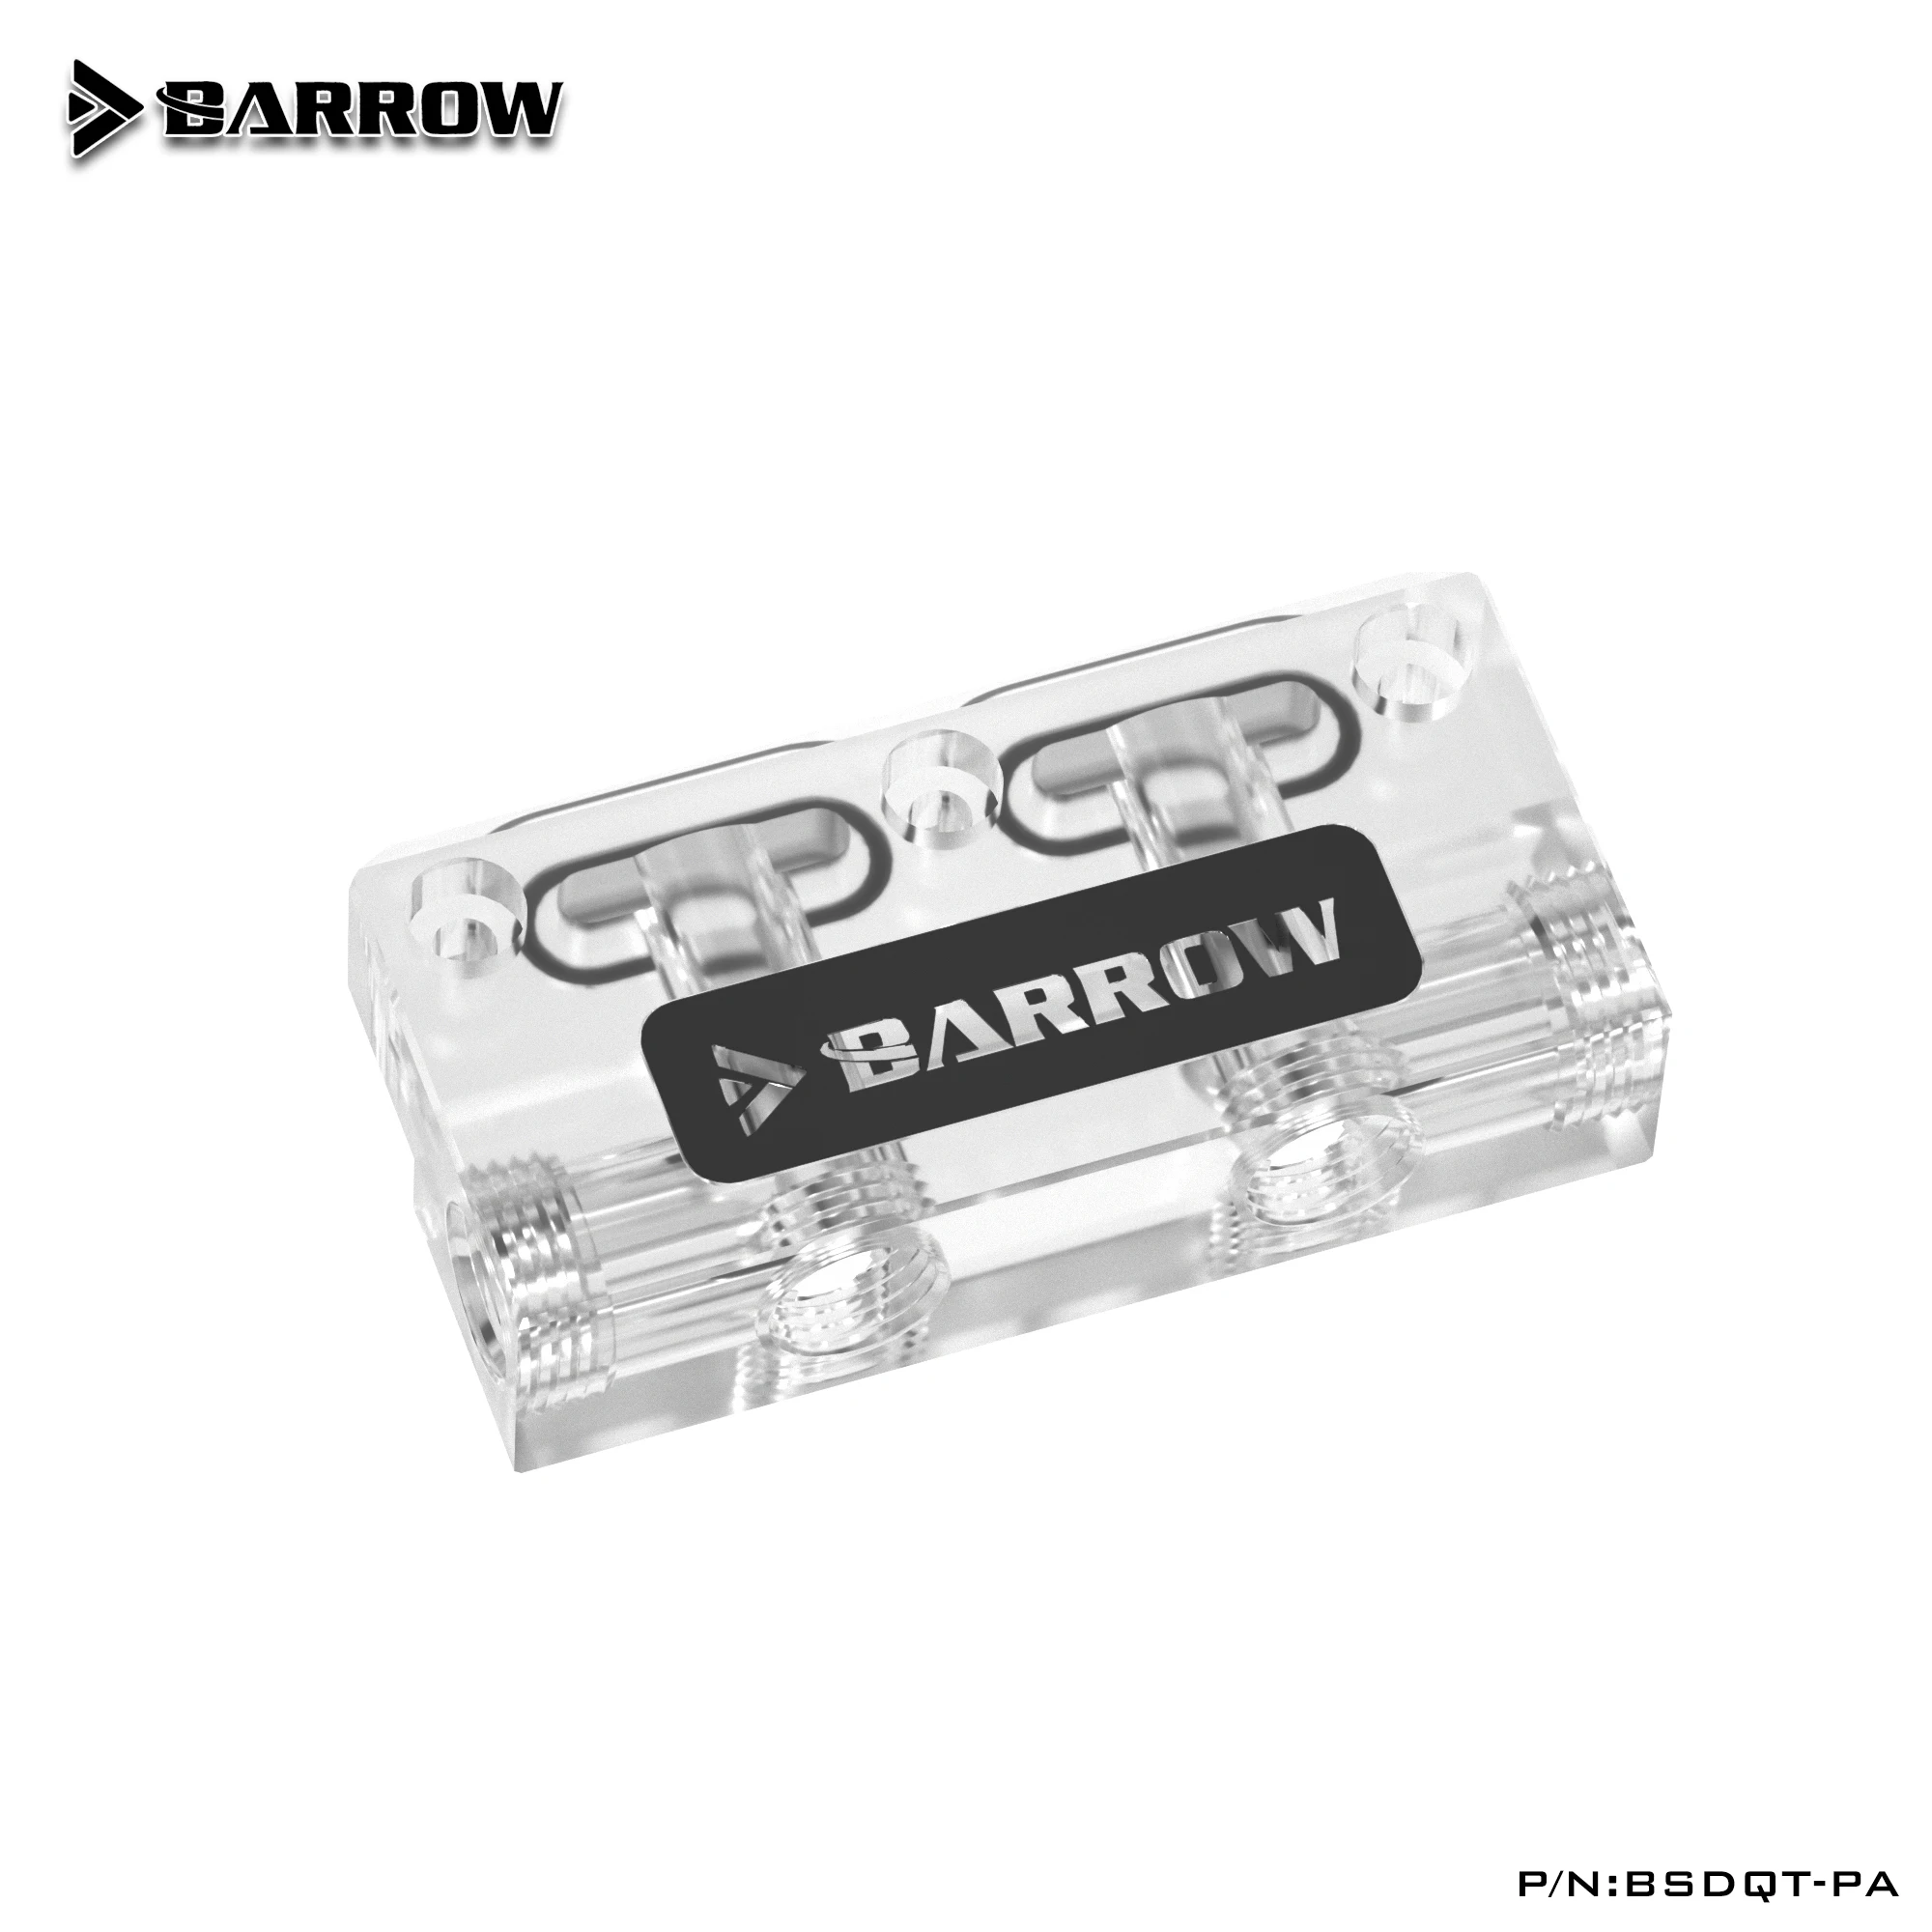 

Barrow BSDQT-PA многофункциональный акриловый блок изменения направления L-типа GPU для установки водяного блока Barrow's GPU